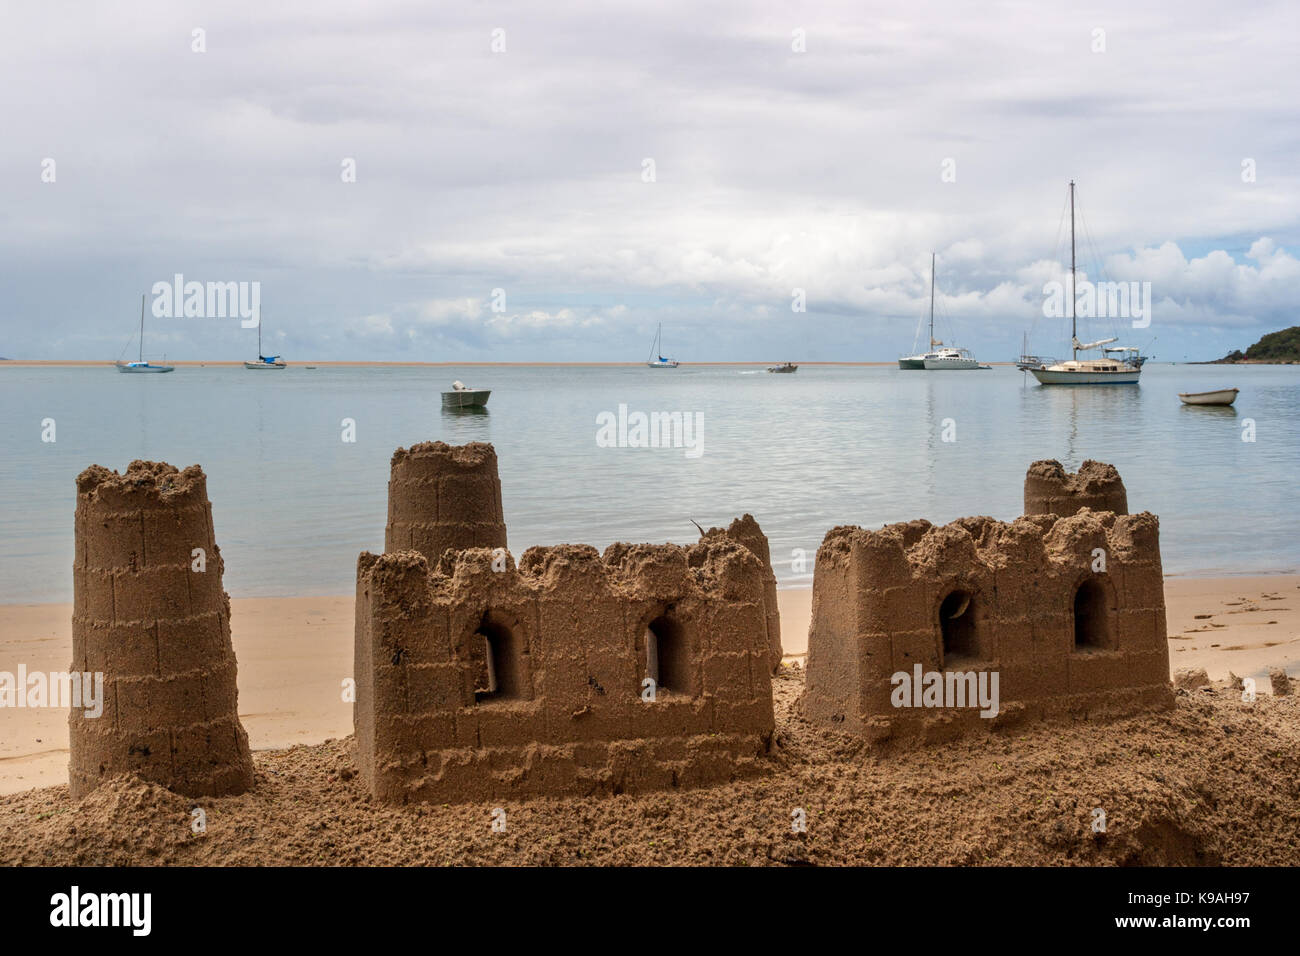 Châteaux de sable sur la plage et yachts amarrés dans la baie - une destination de vacances idéale. Banque D'Images